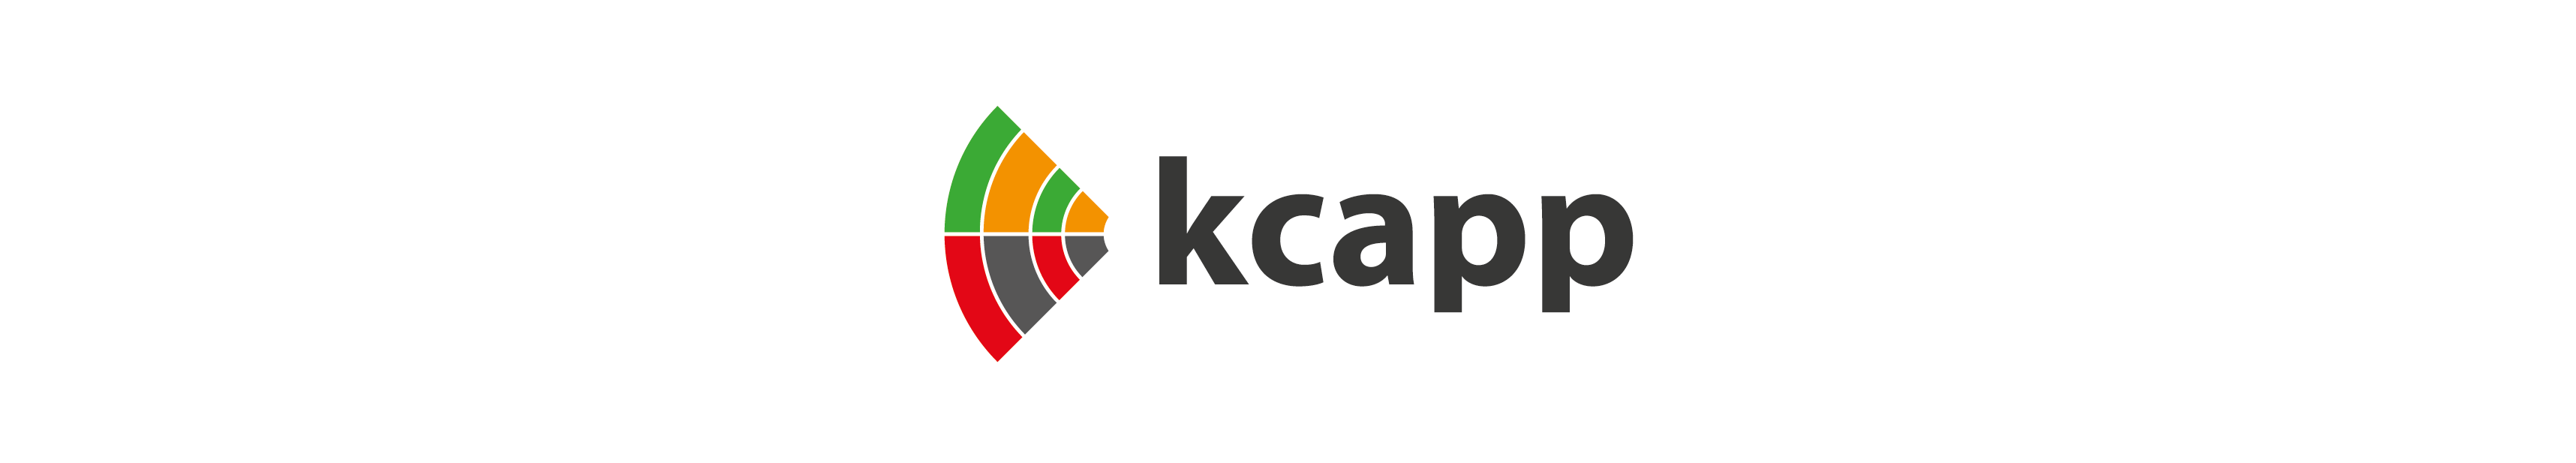 kcapp logo